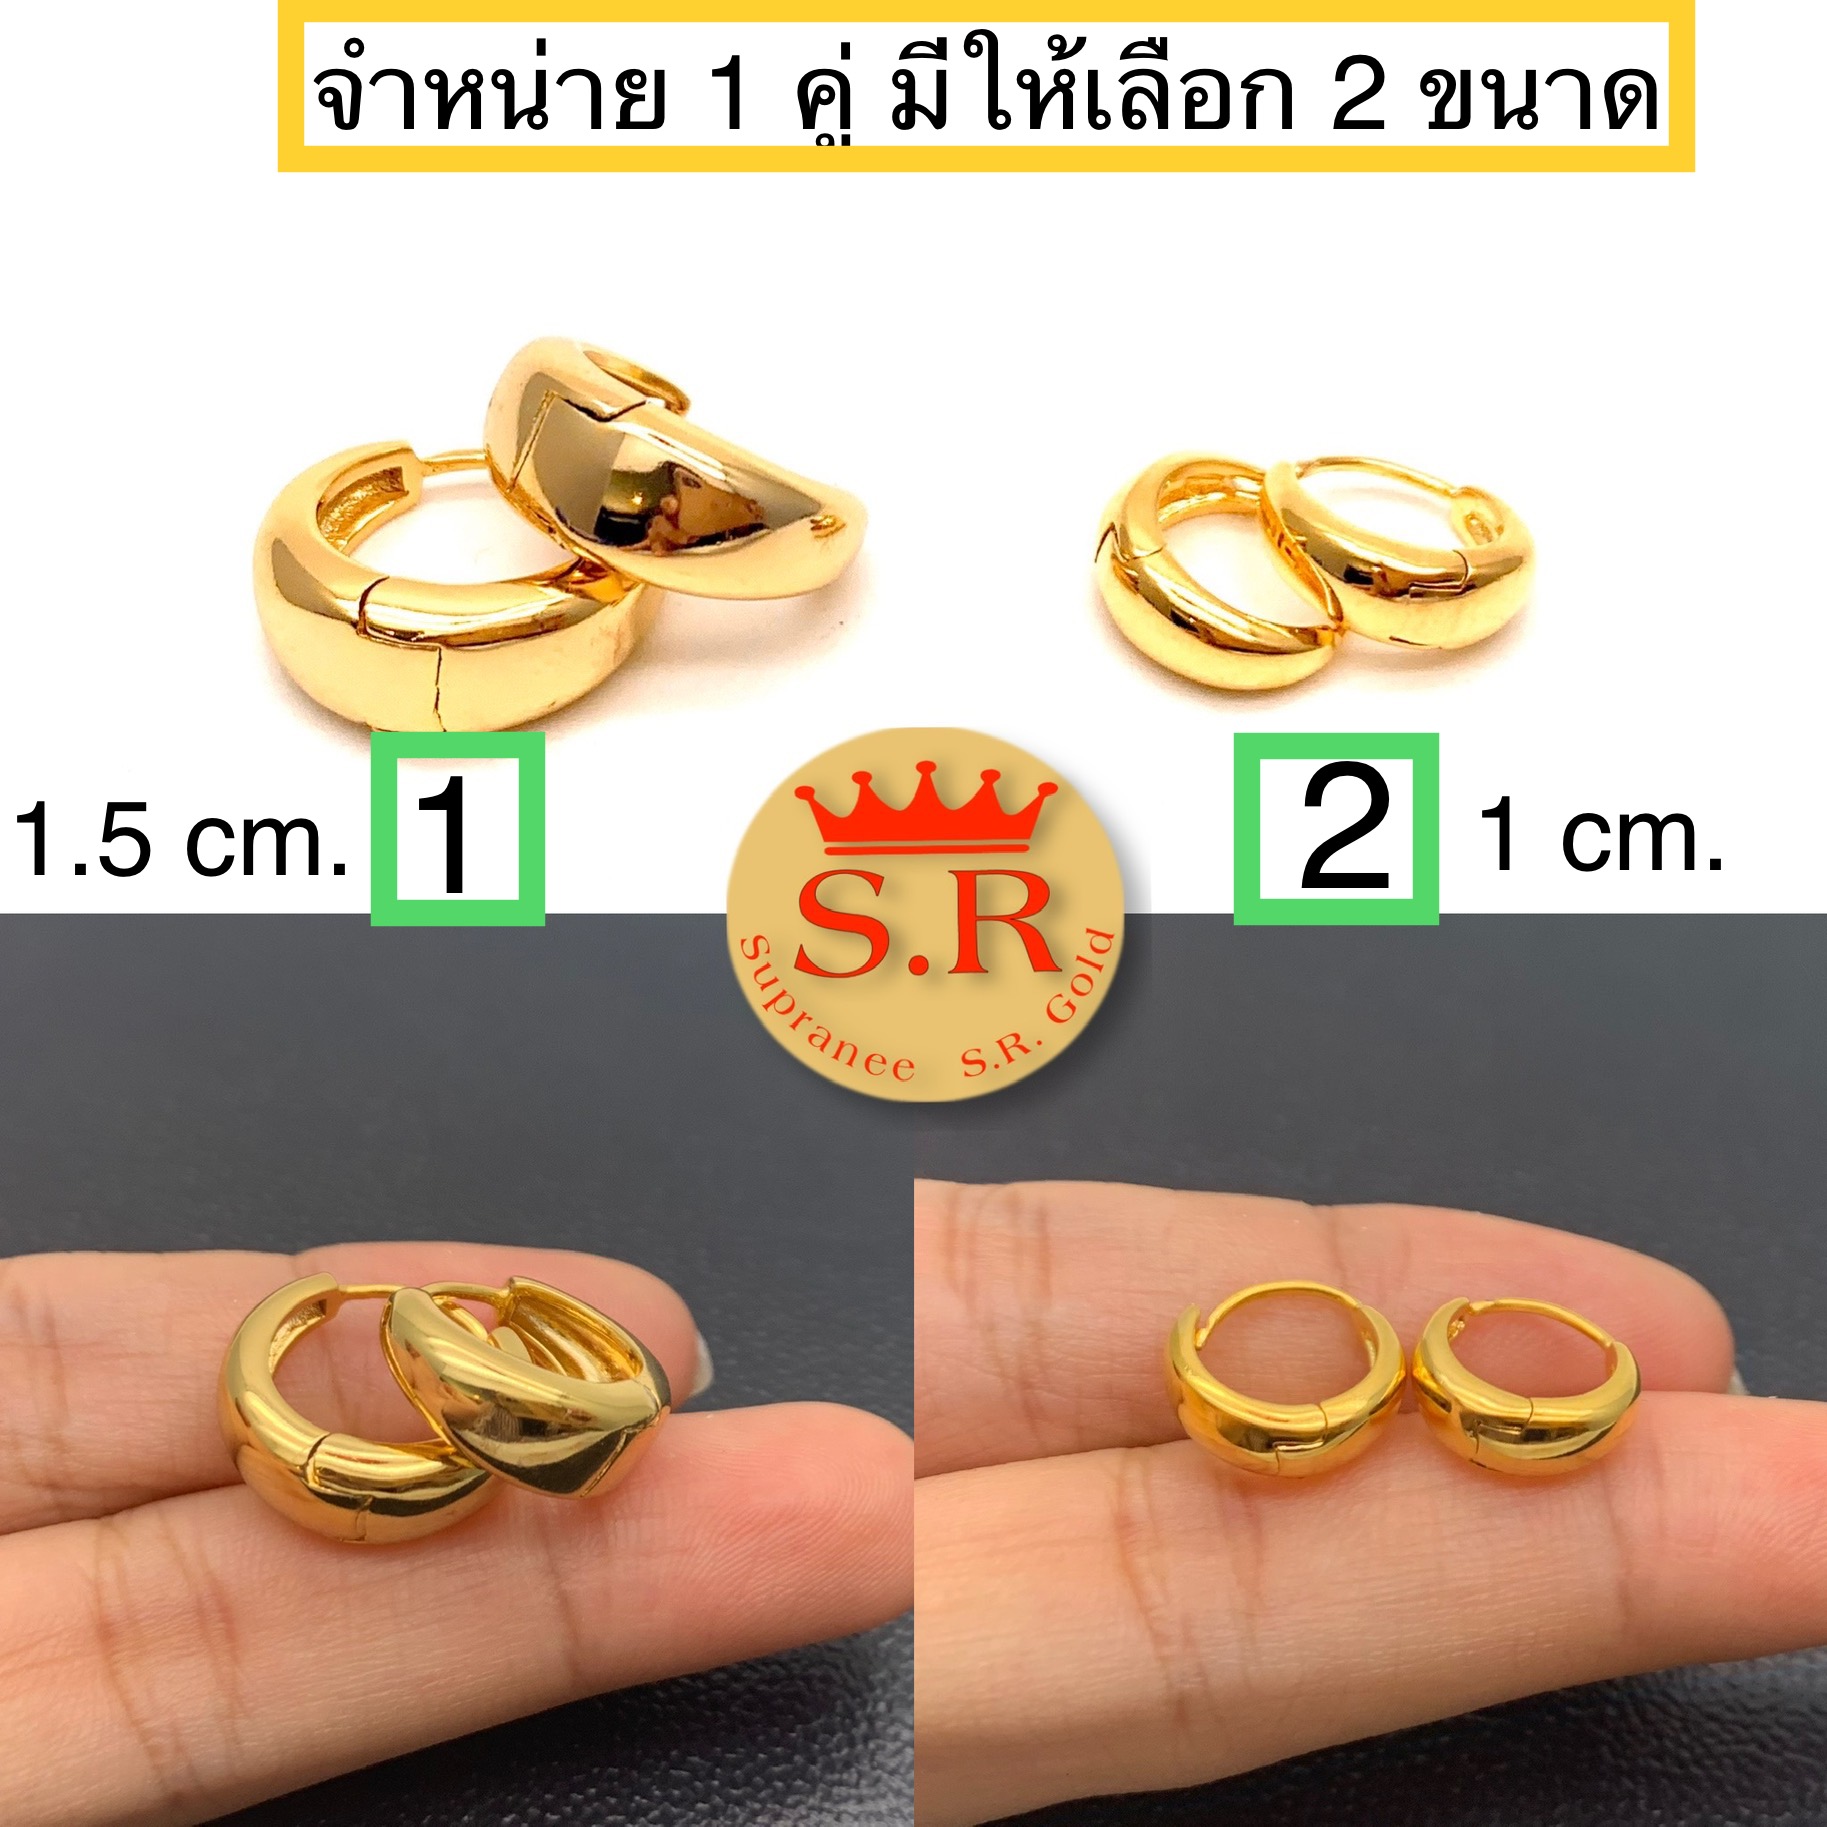 ต่างหูขาล็อคท้องปลิงเงาหุ้มทองคำแท้ แถมฟรีตลับแดง bySupranee S.R Gold